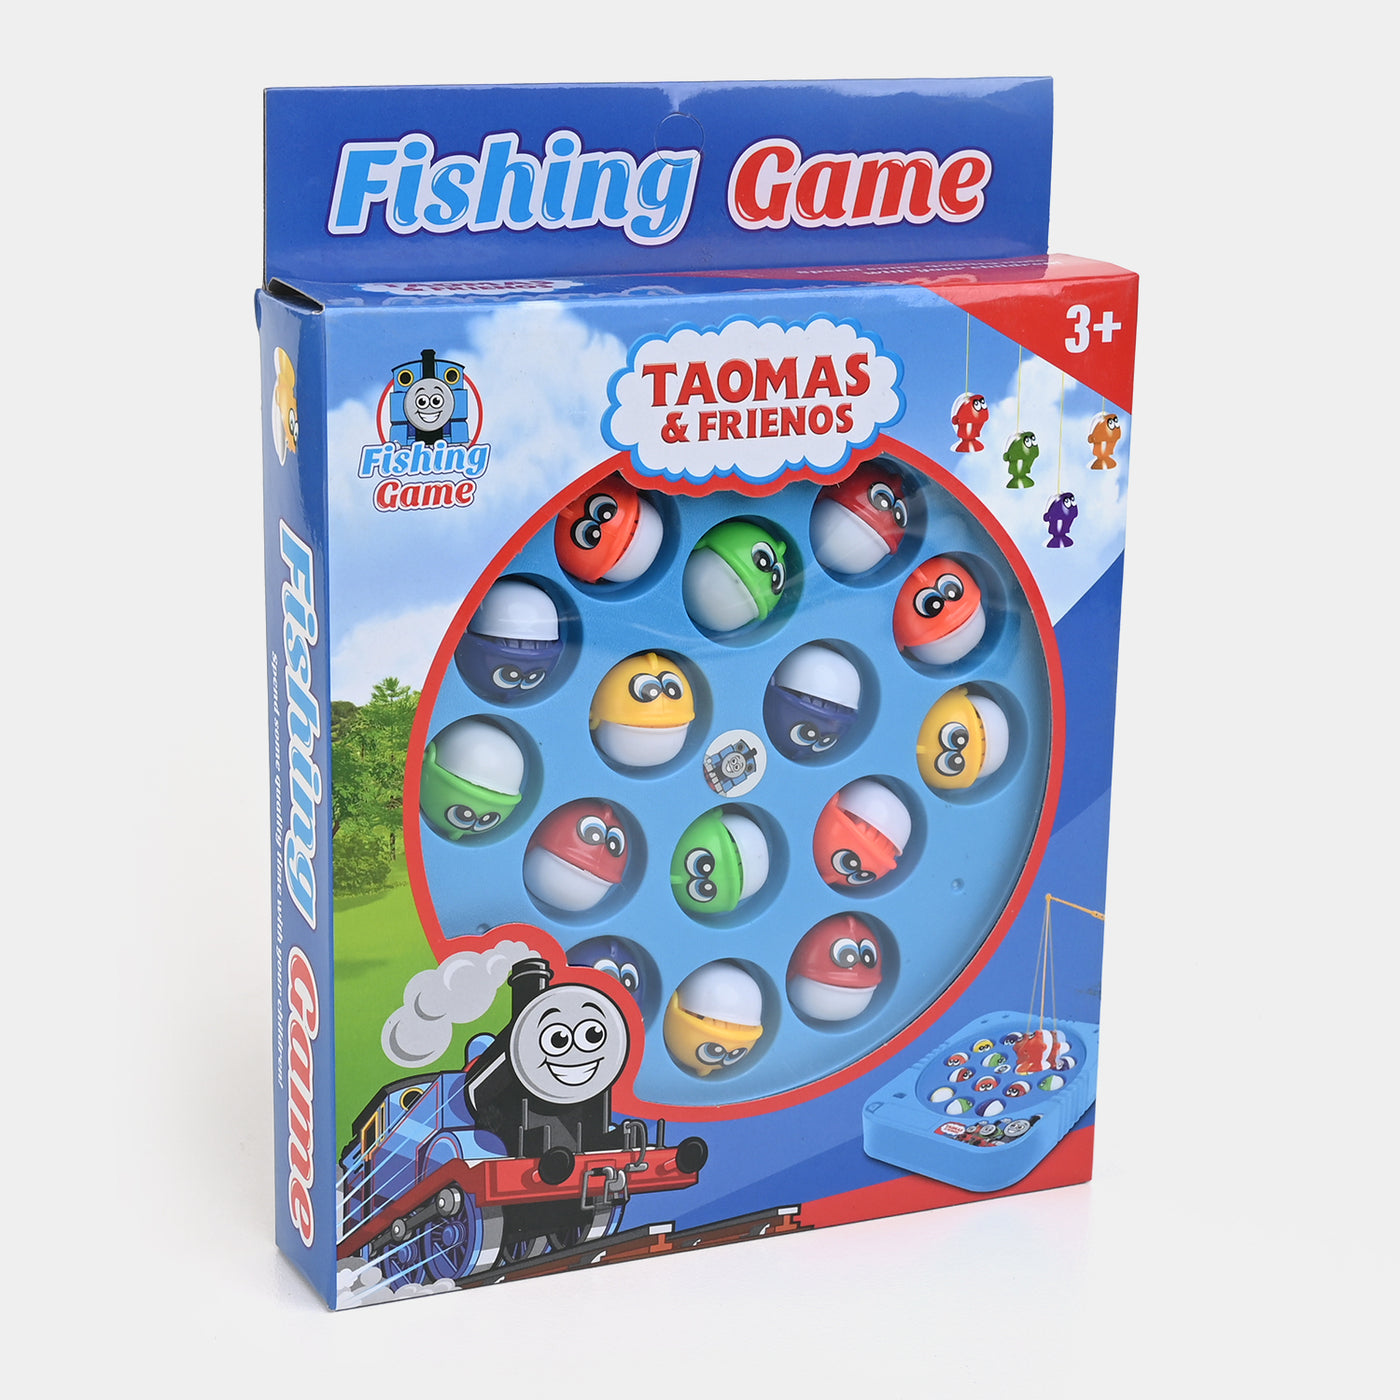 Kid-friendly Fishing Game Play Set